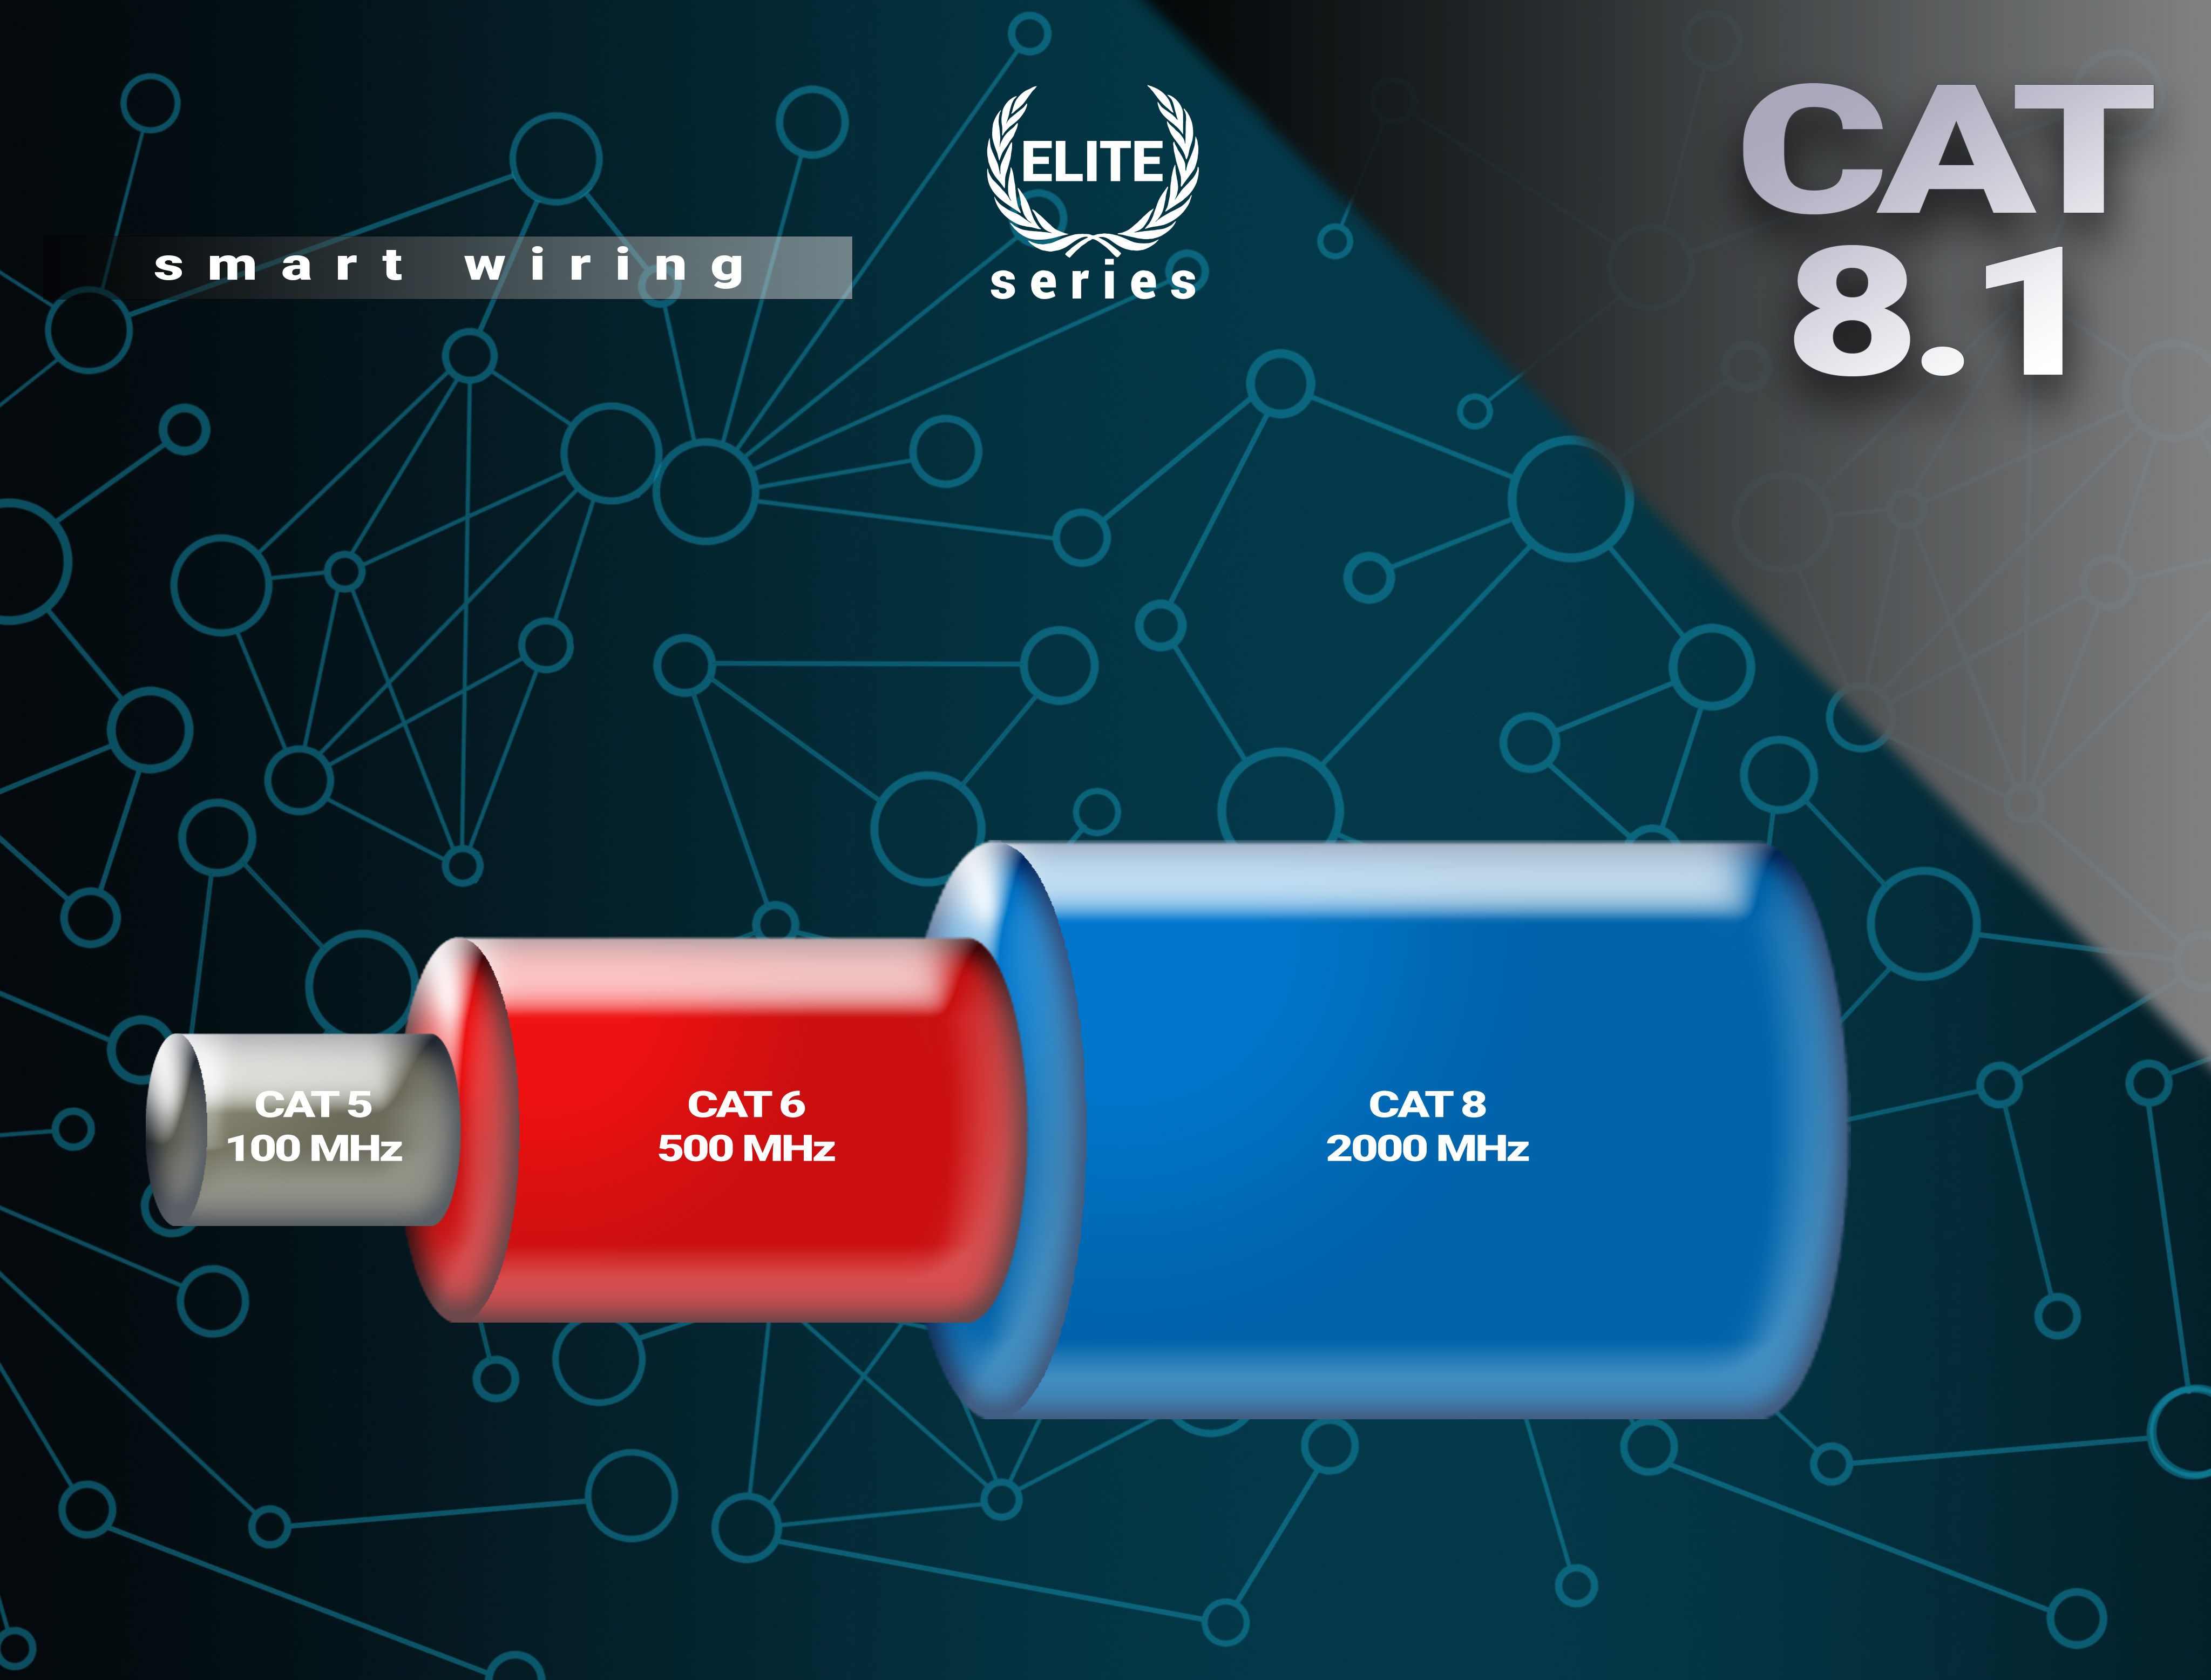 8.1 Netzwerkkabel, CAT Gbps Elite-Series, - BIVANI 15 LAN Premium Kabel 40 m